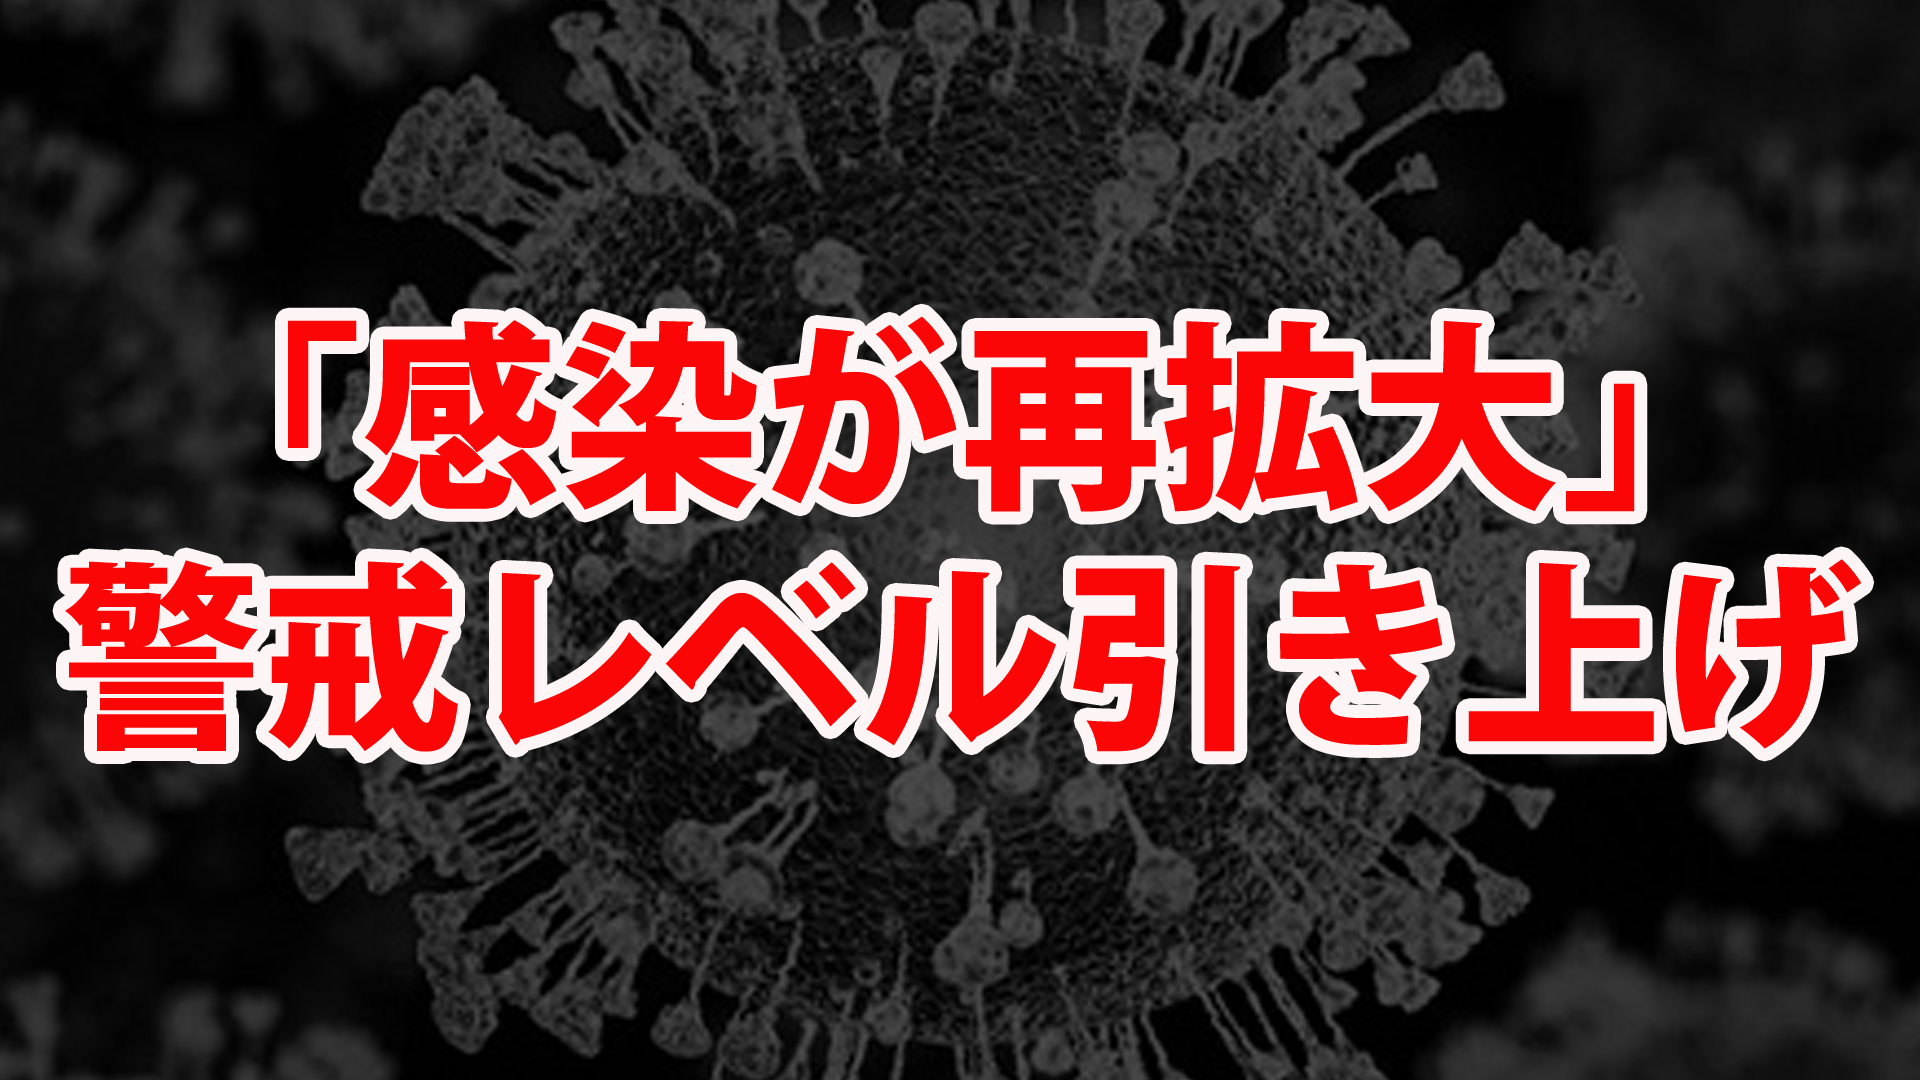 感染が再拡大 警戒レベル引き上げ 東京都モニタリング会議